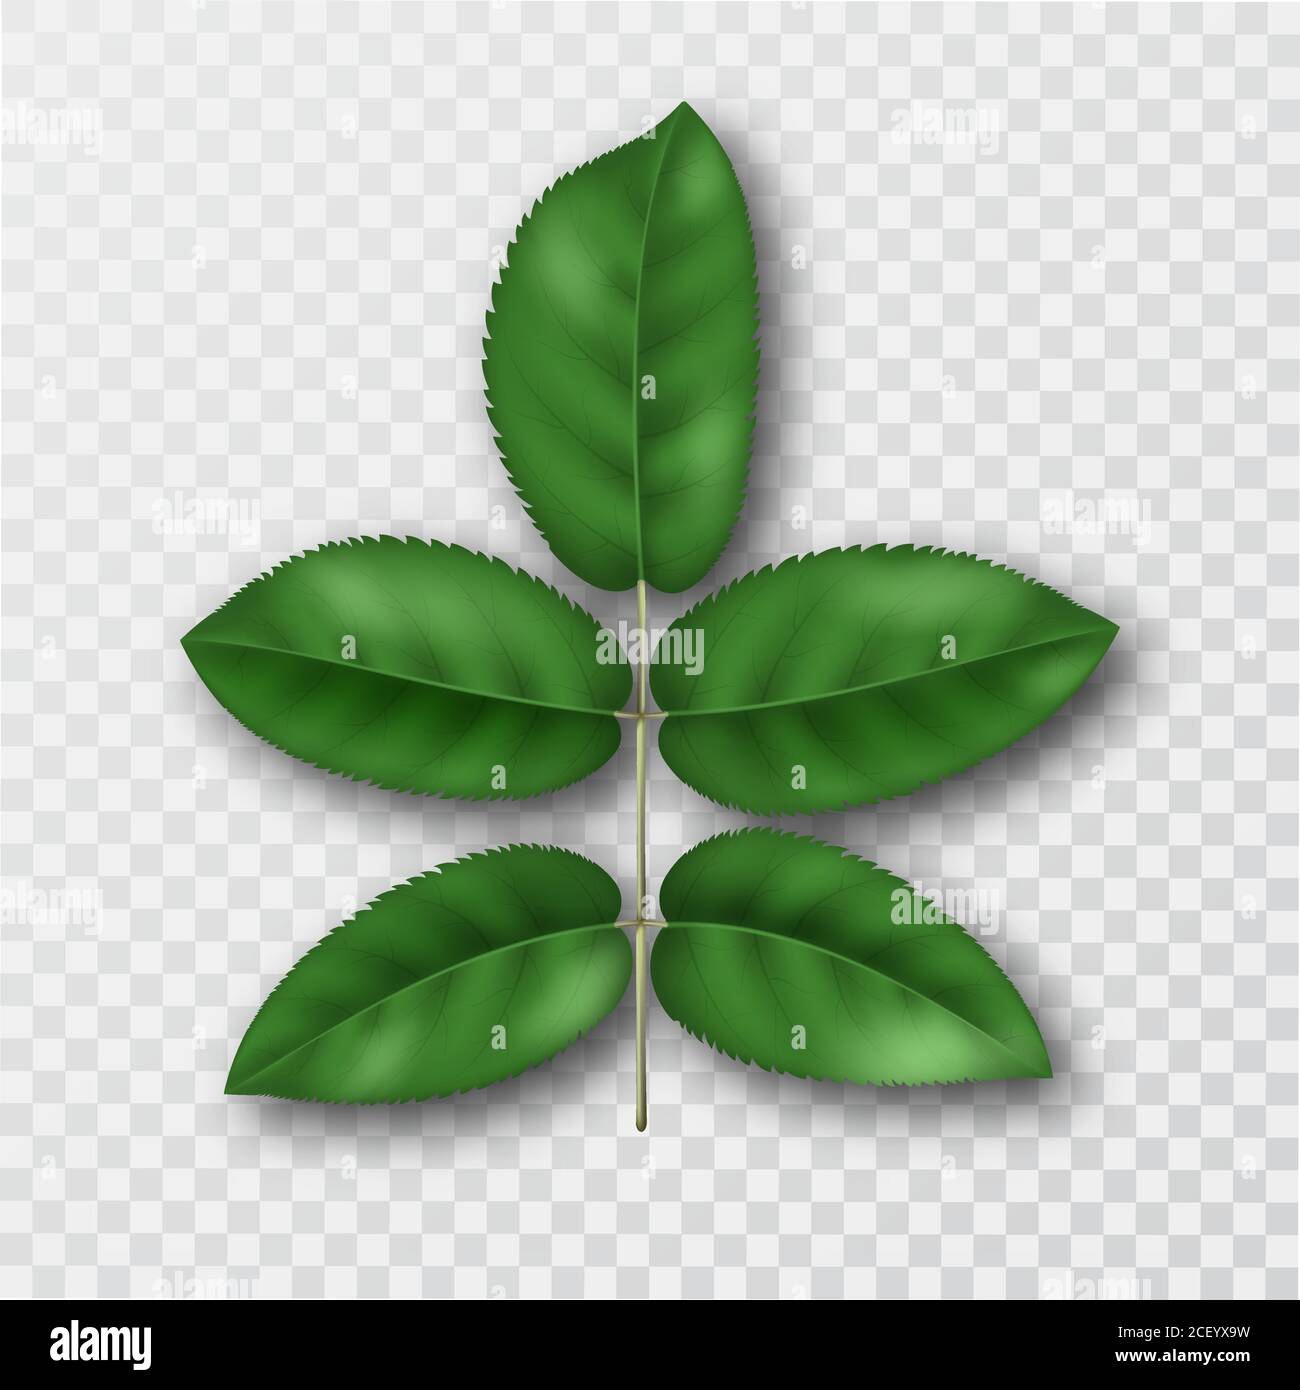 Cherry diramazione con foglie.Verde fogliame su trasparente telefono isolato.elementi 3D per design.Vector illustrazione realistica. Illustrazione Vettoriale